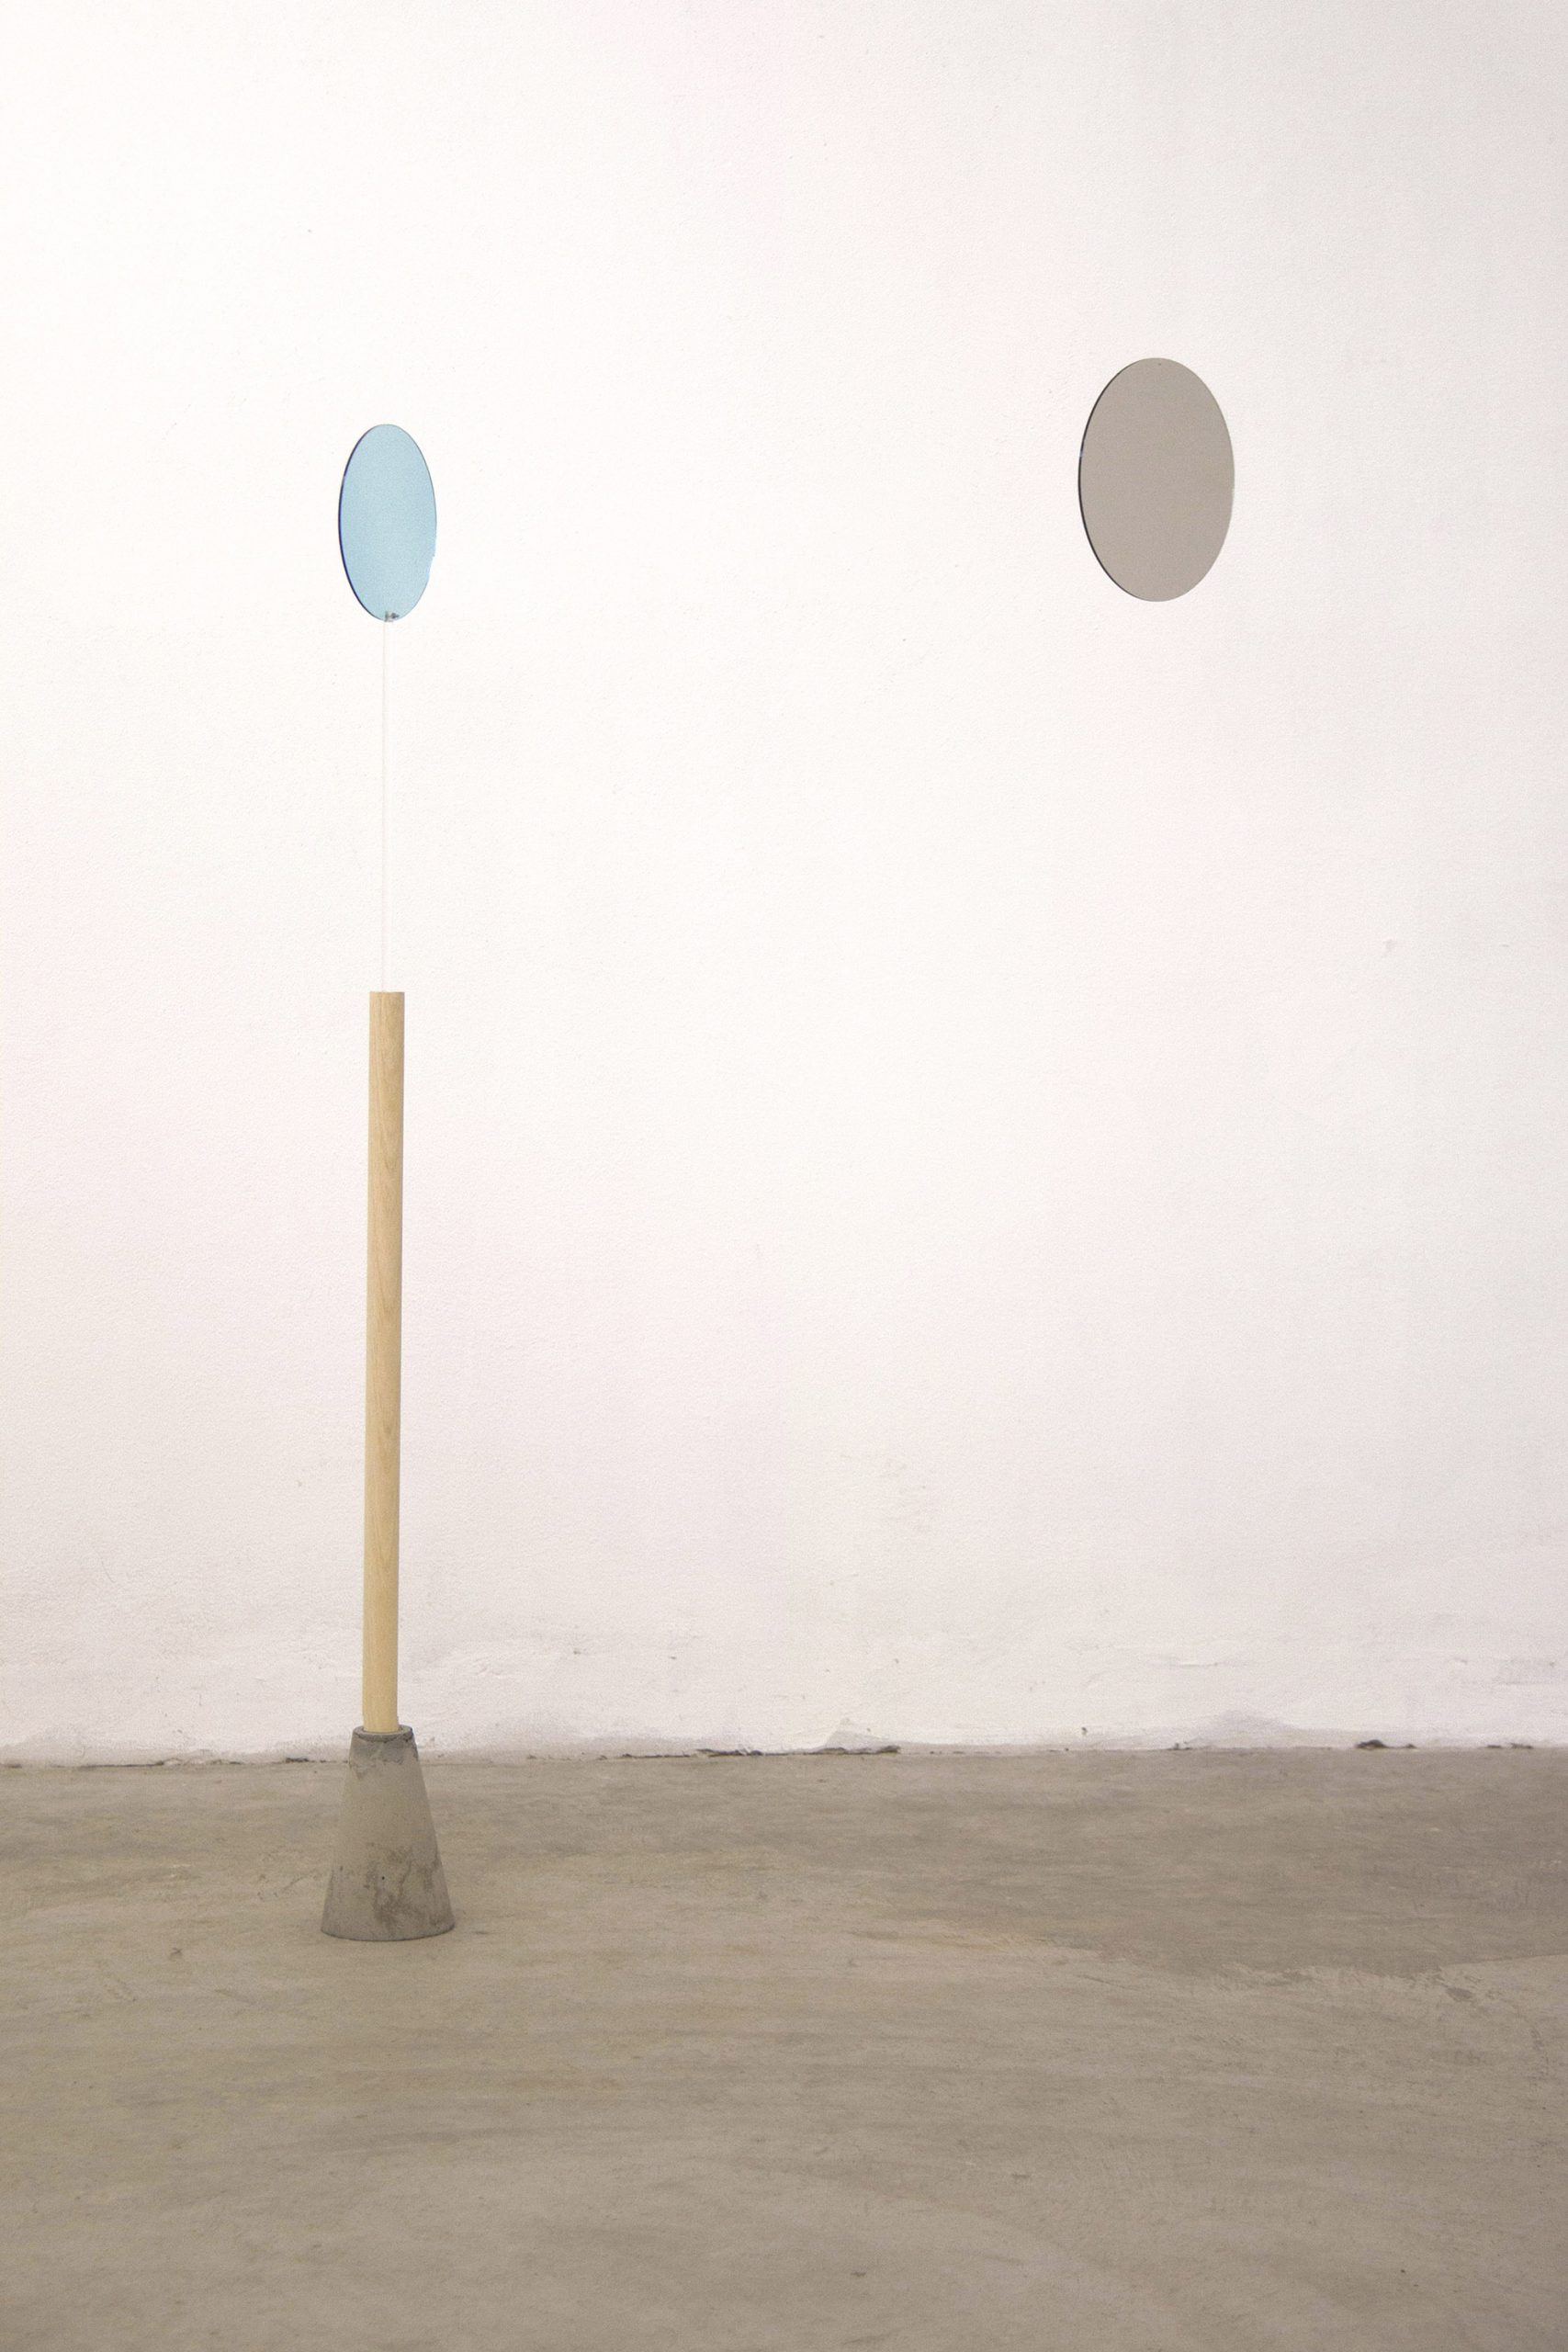 Giulia Fumagalli, “Lasciarsi eclissare azzurro - grigio”, 2019, plexiglass, adhesive films, nylon wire, wood, cement, 152 cm x variable dimensions